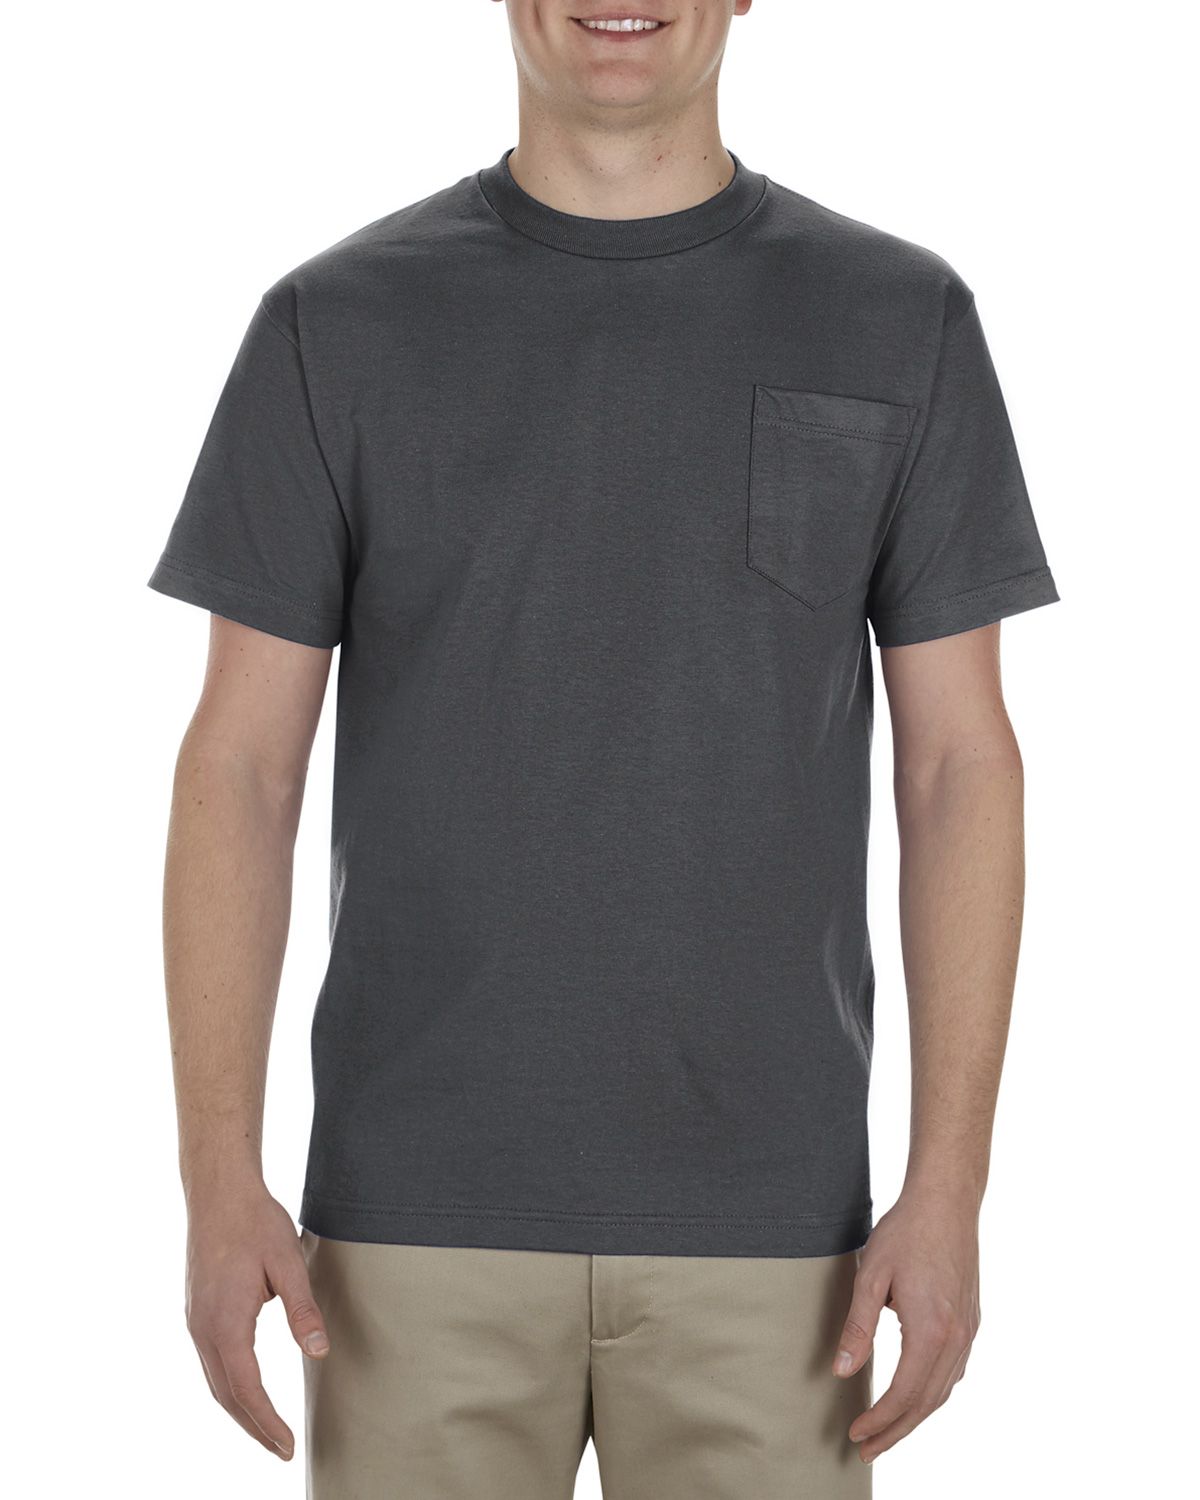 Alstyle AL1305 Men's 6.0 oz.100% Cotton Pocket T-Shirt